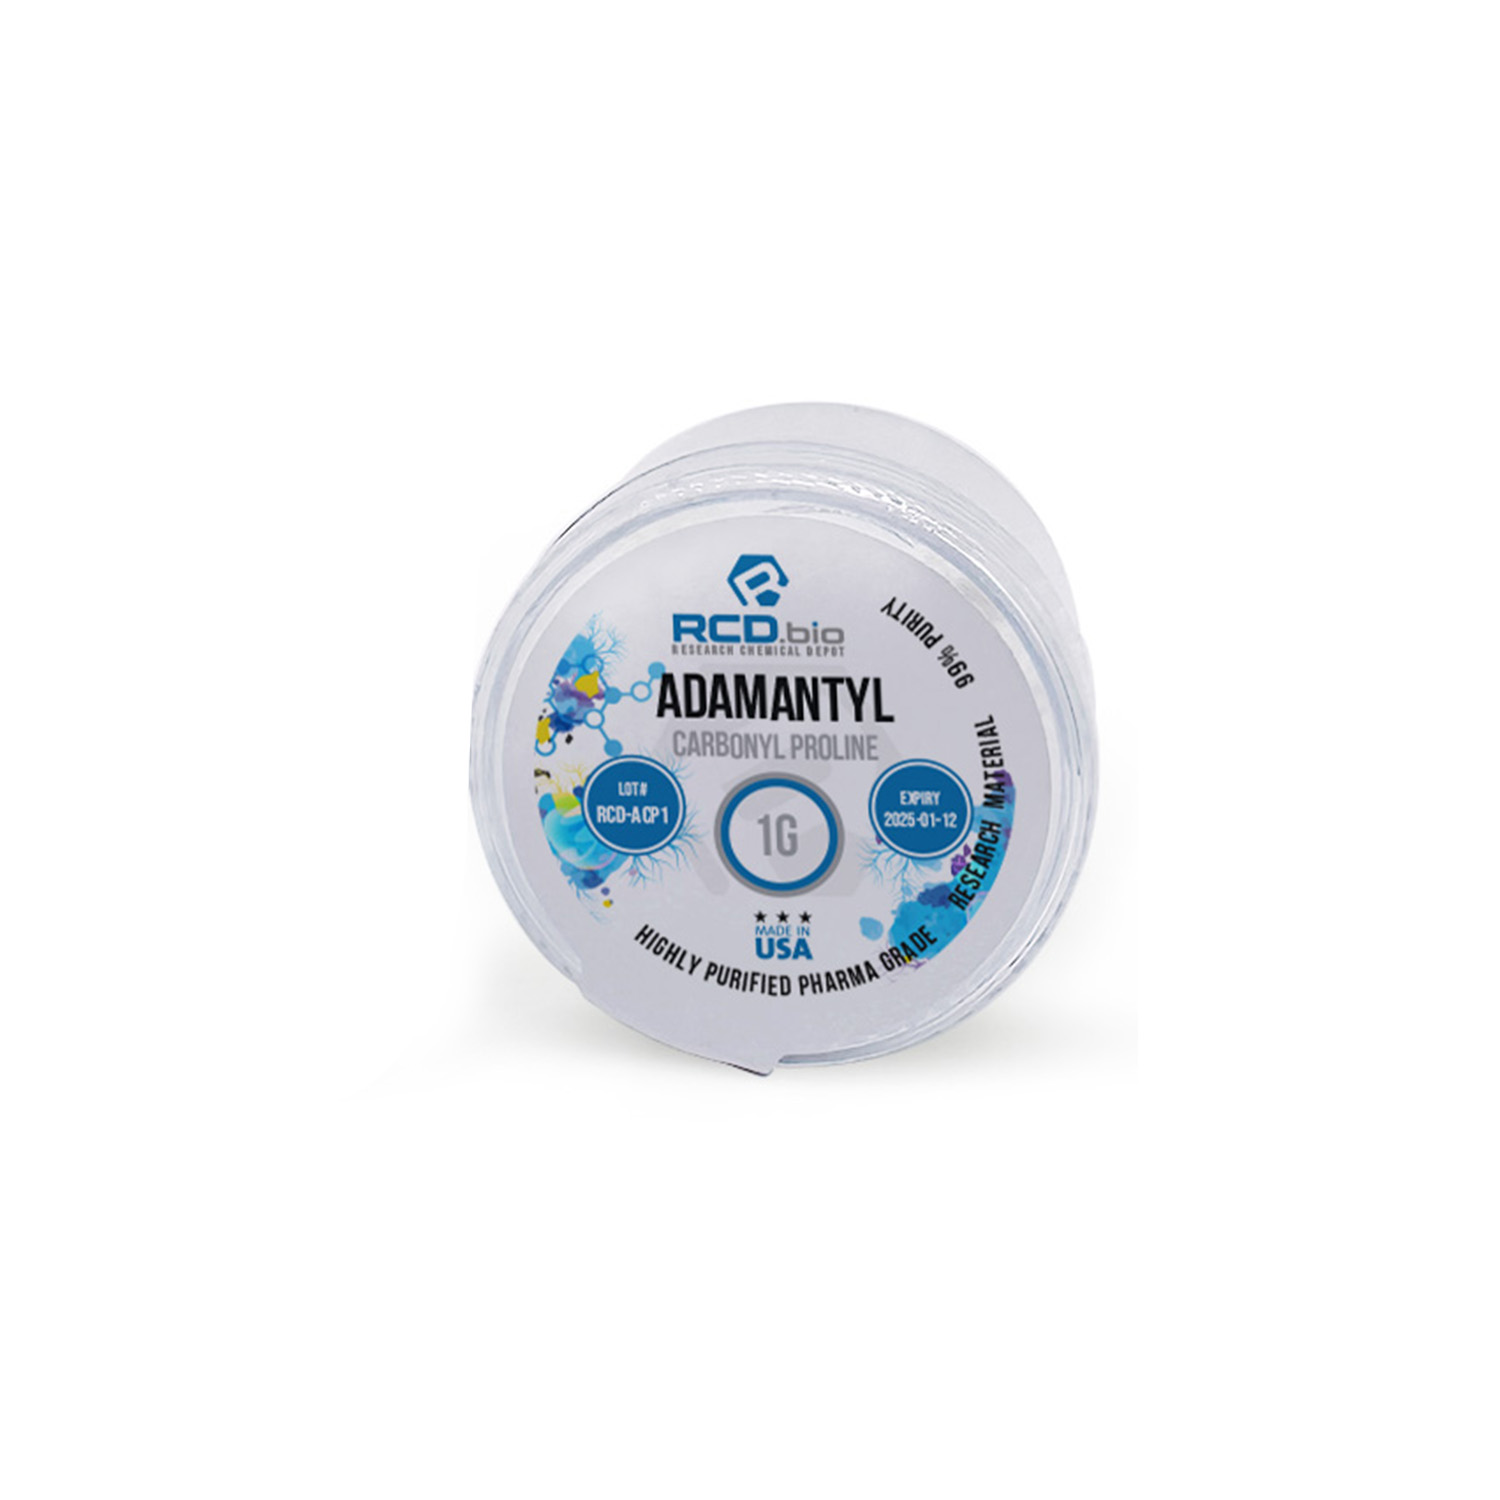 Adamantyl Carbonyl Proline Powder For Sale | Fast Shipping